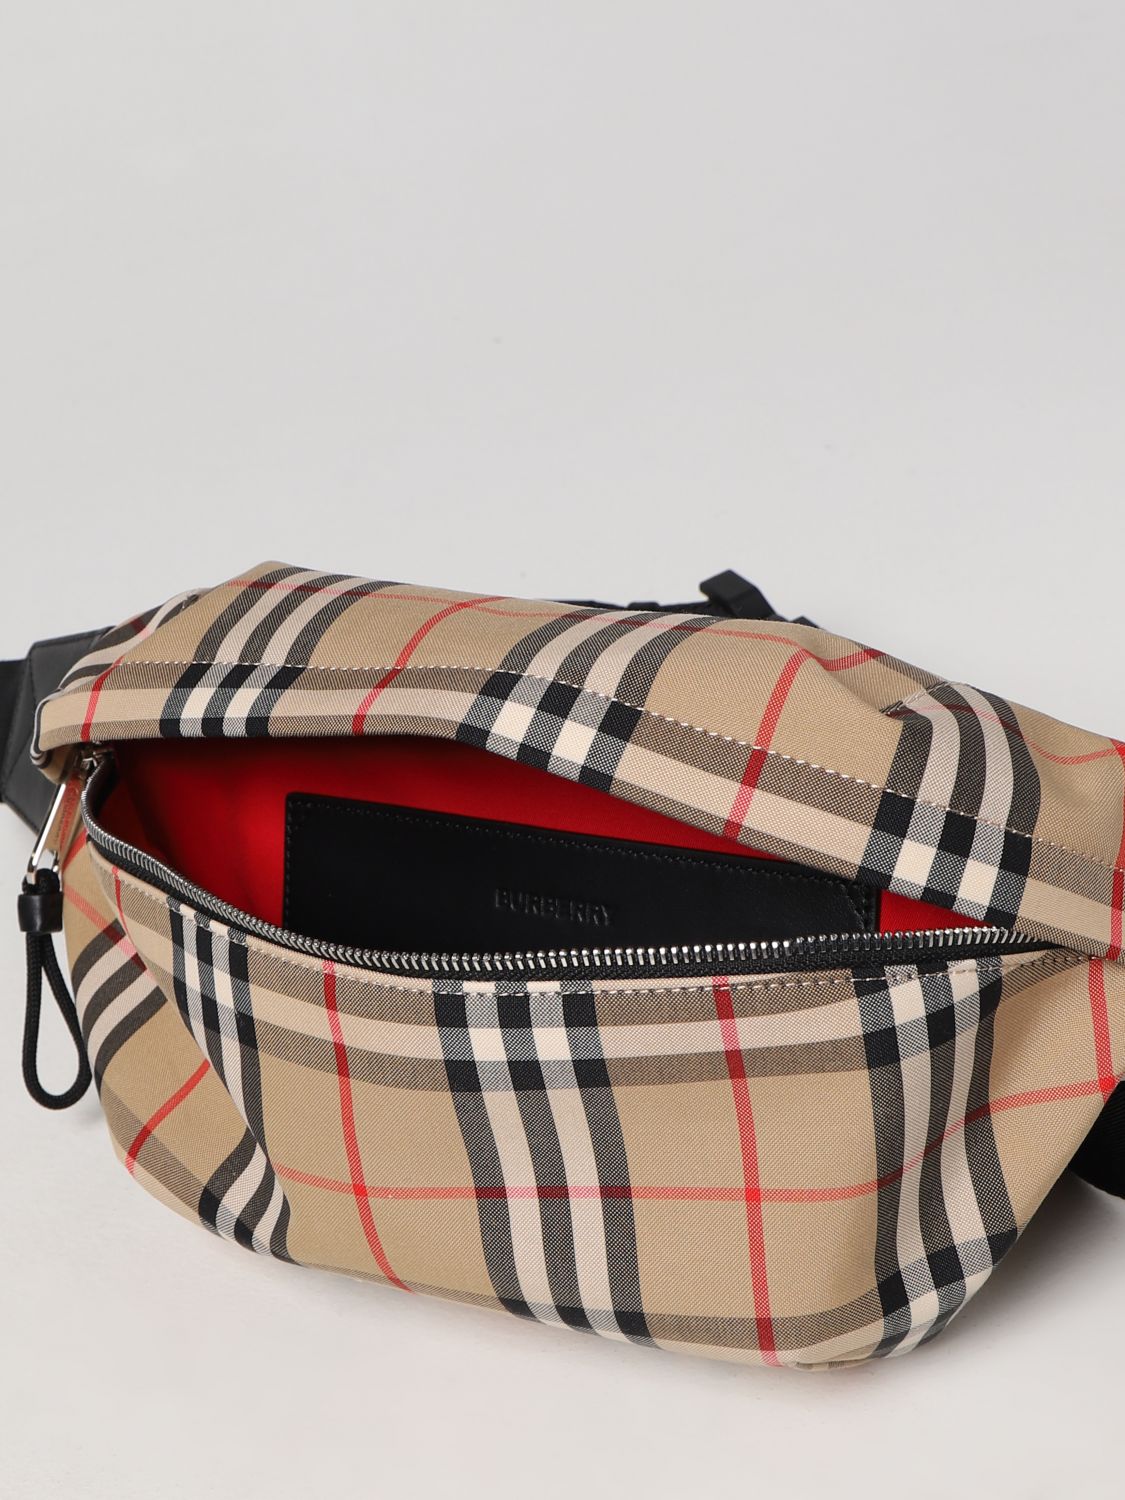 Belt bags Burberry - Sonny Vintage check belt bag - 8010430